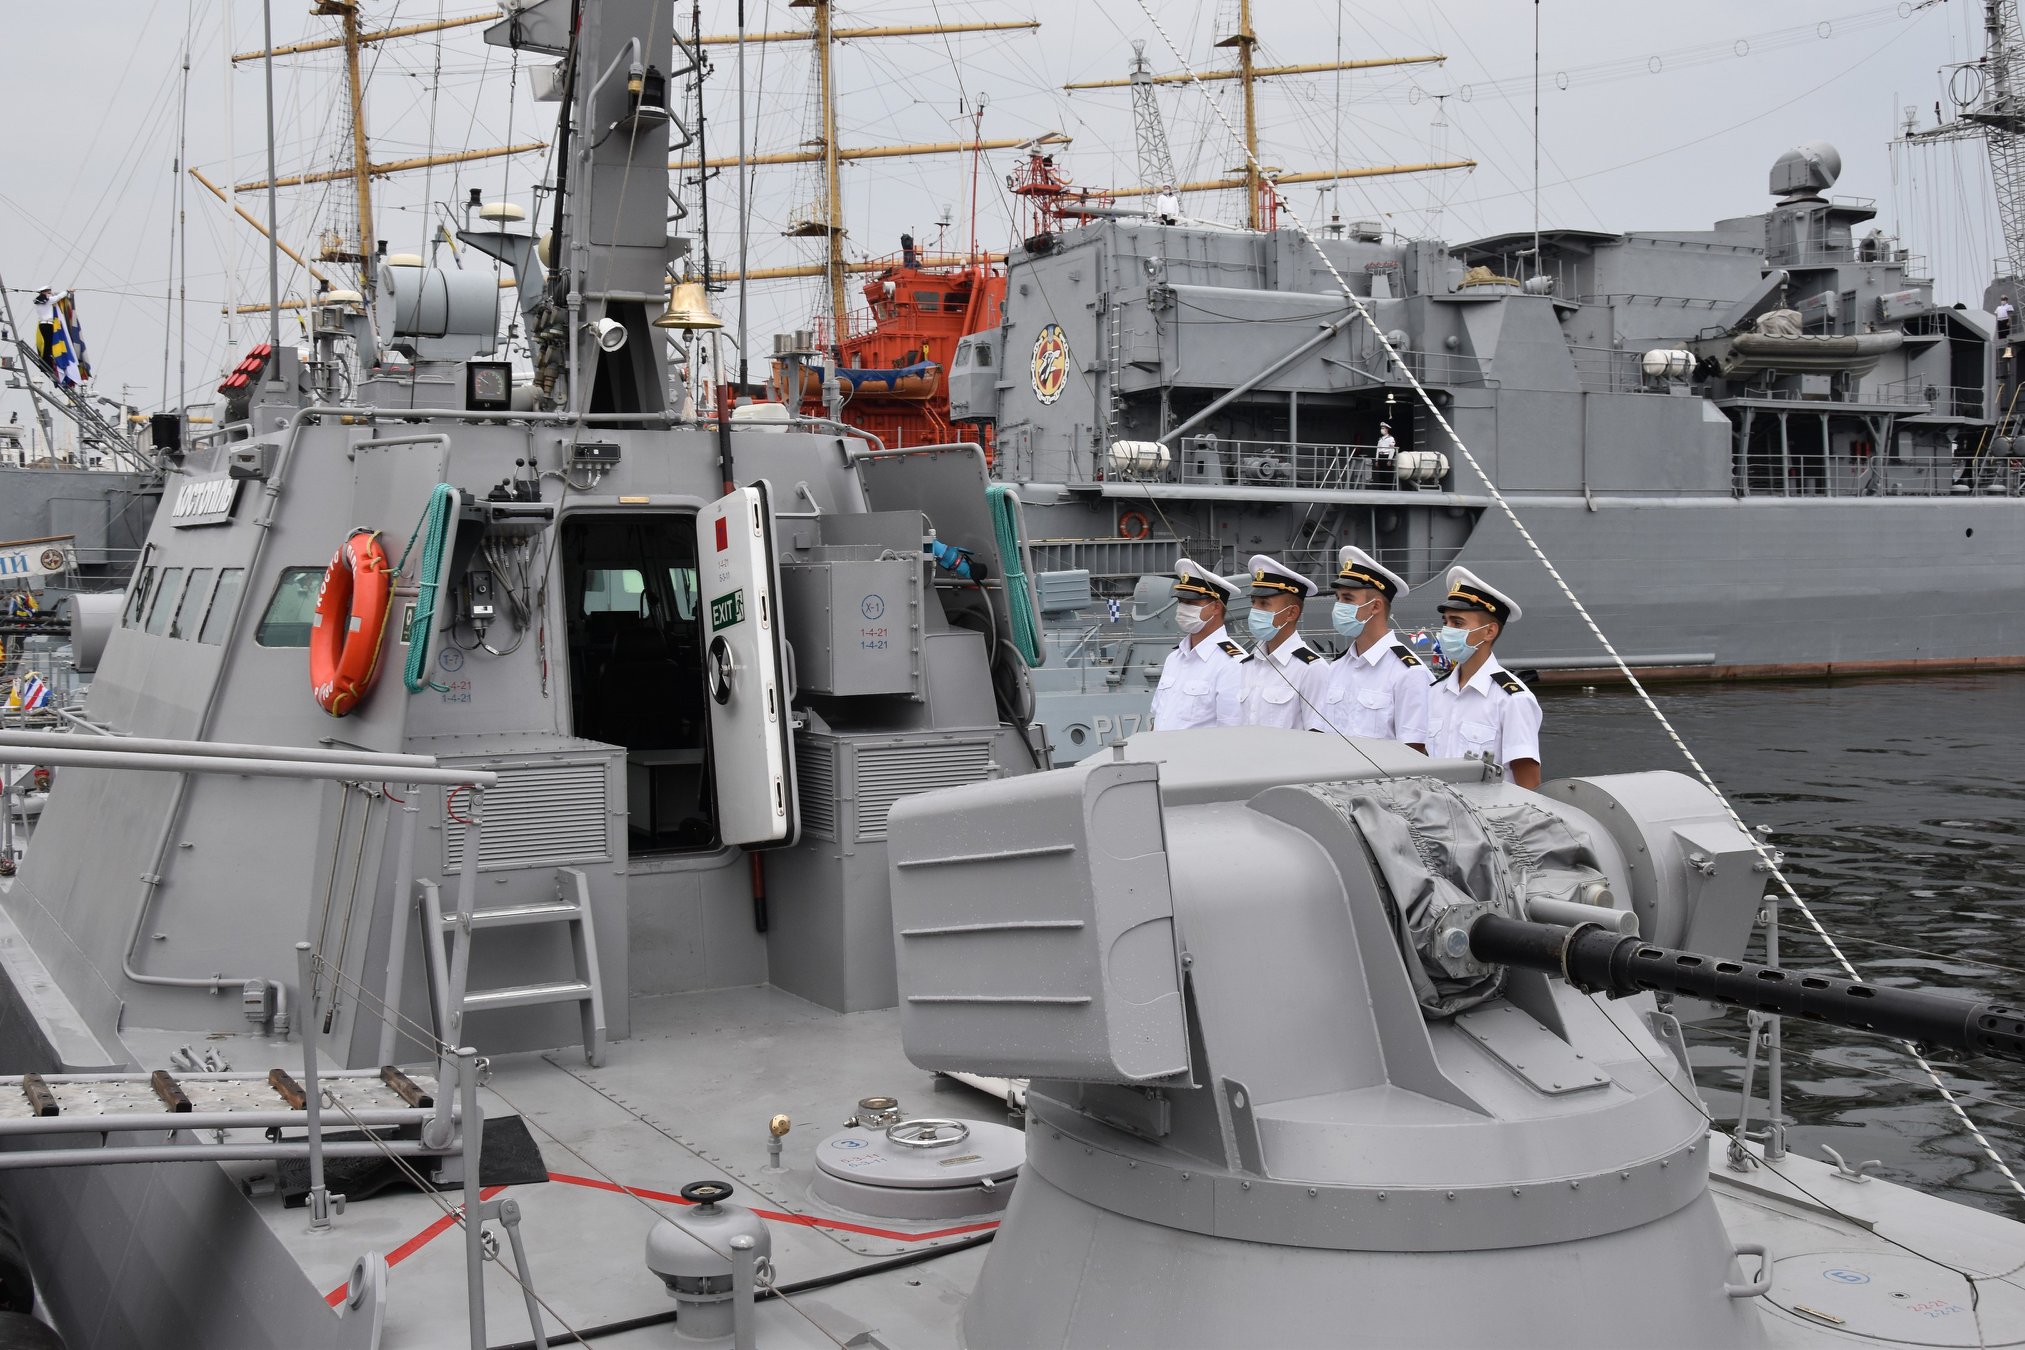 Артиллерийский катер "Костополь" включен в состав ВМС Украины